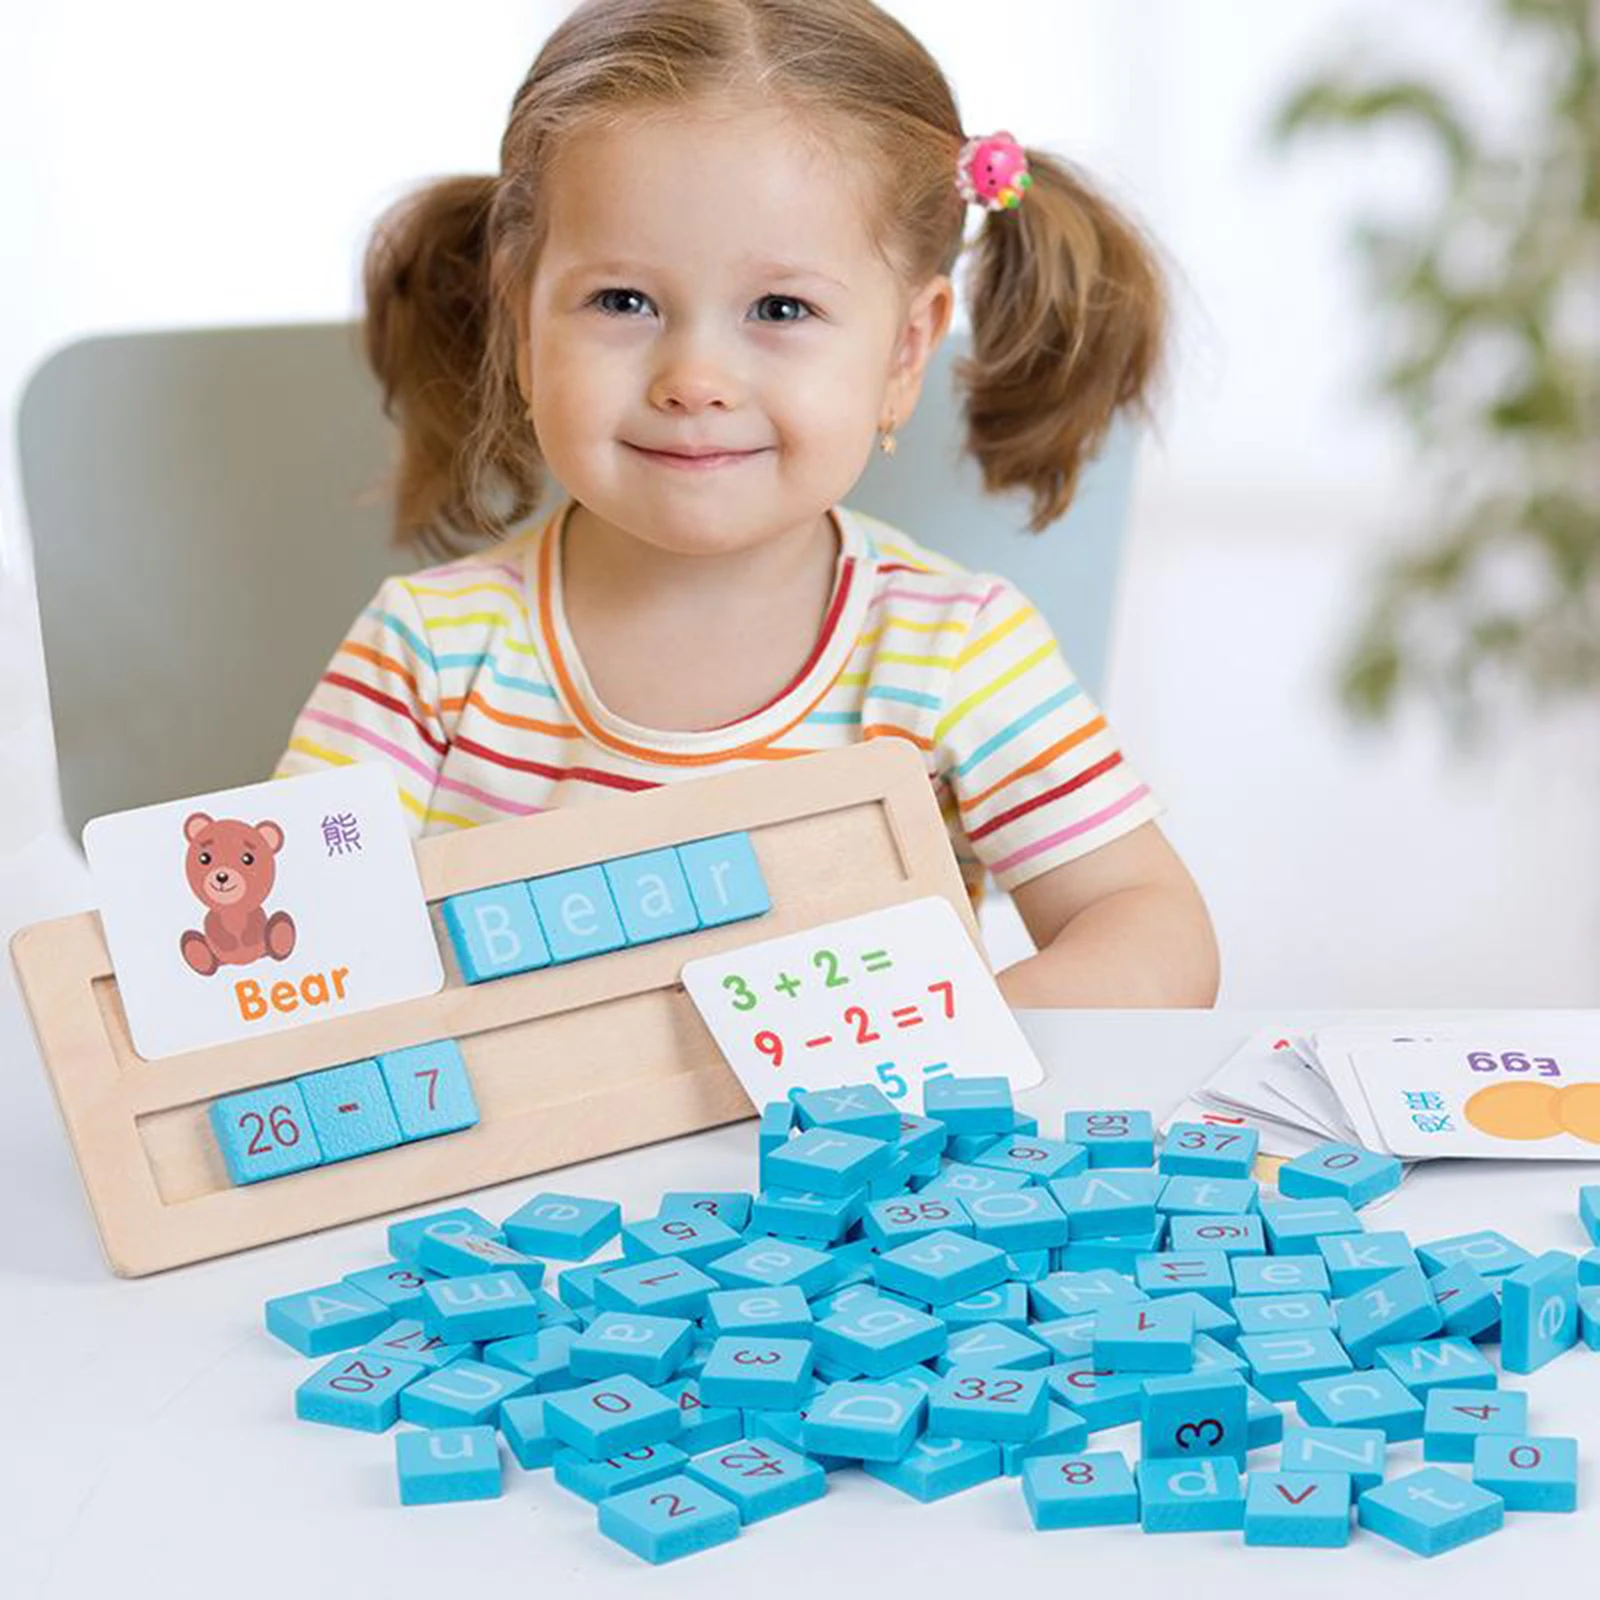 

Деревянные математические головоломки блоки, Монтессори игрушки деревянные цифры буквы блоки с